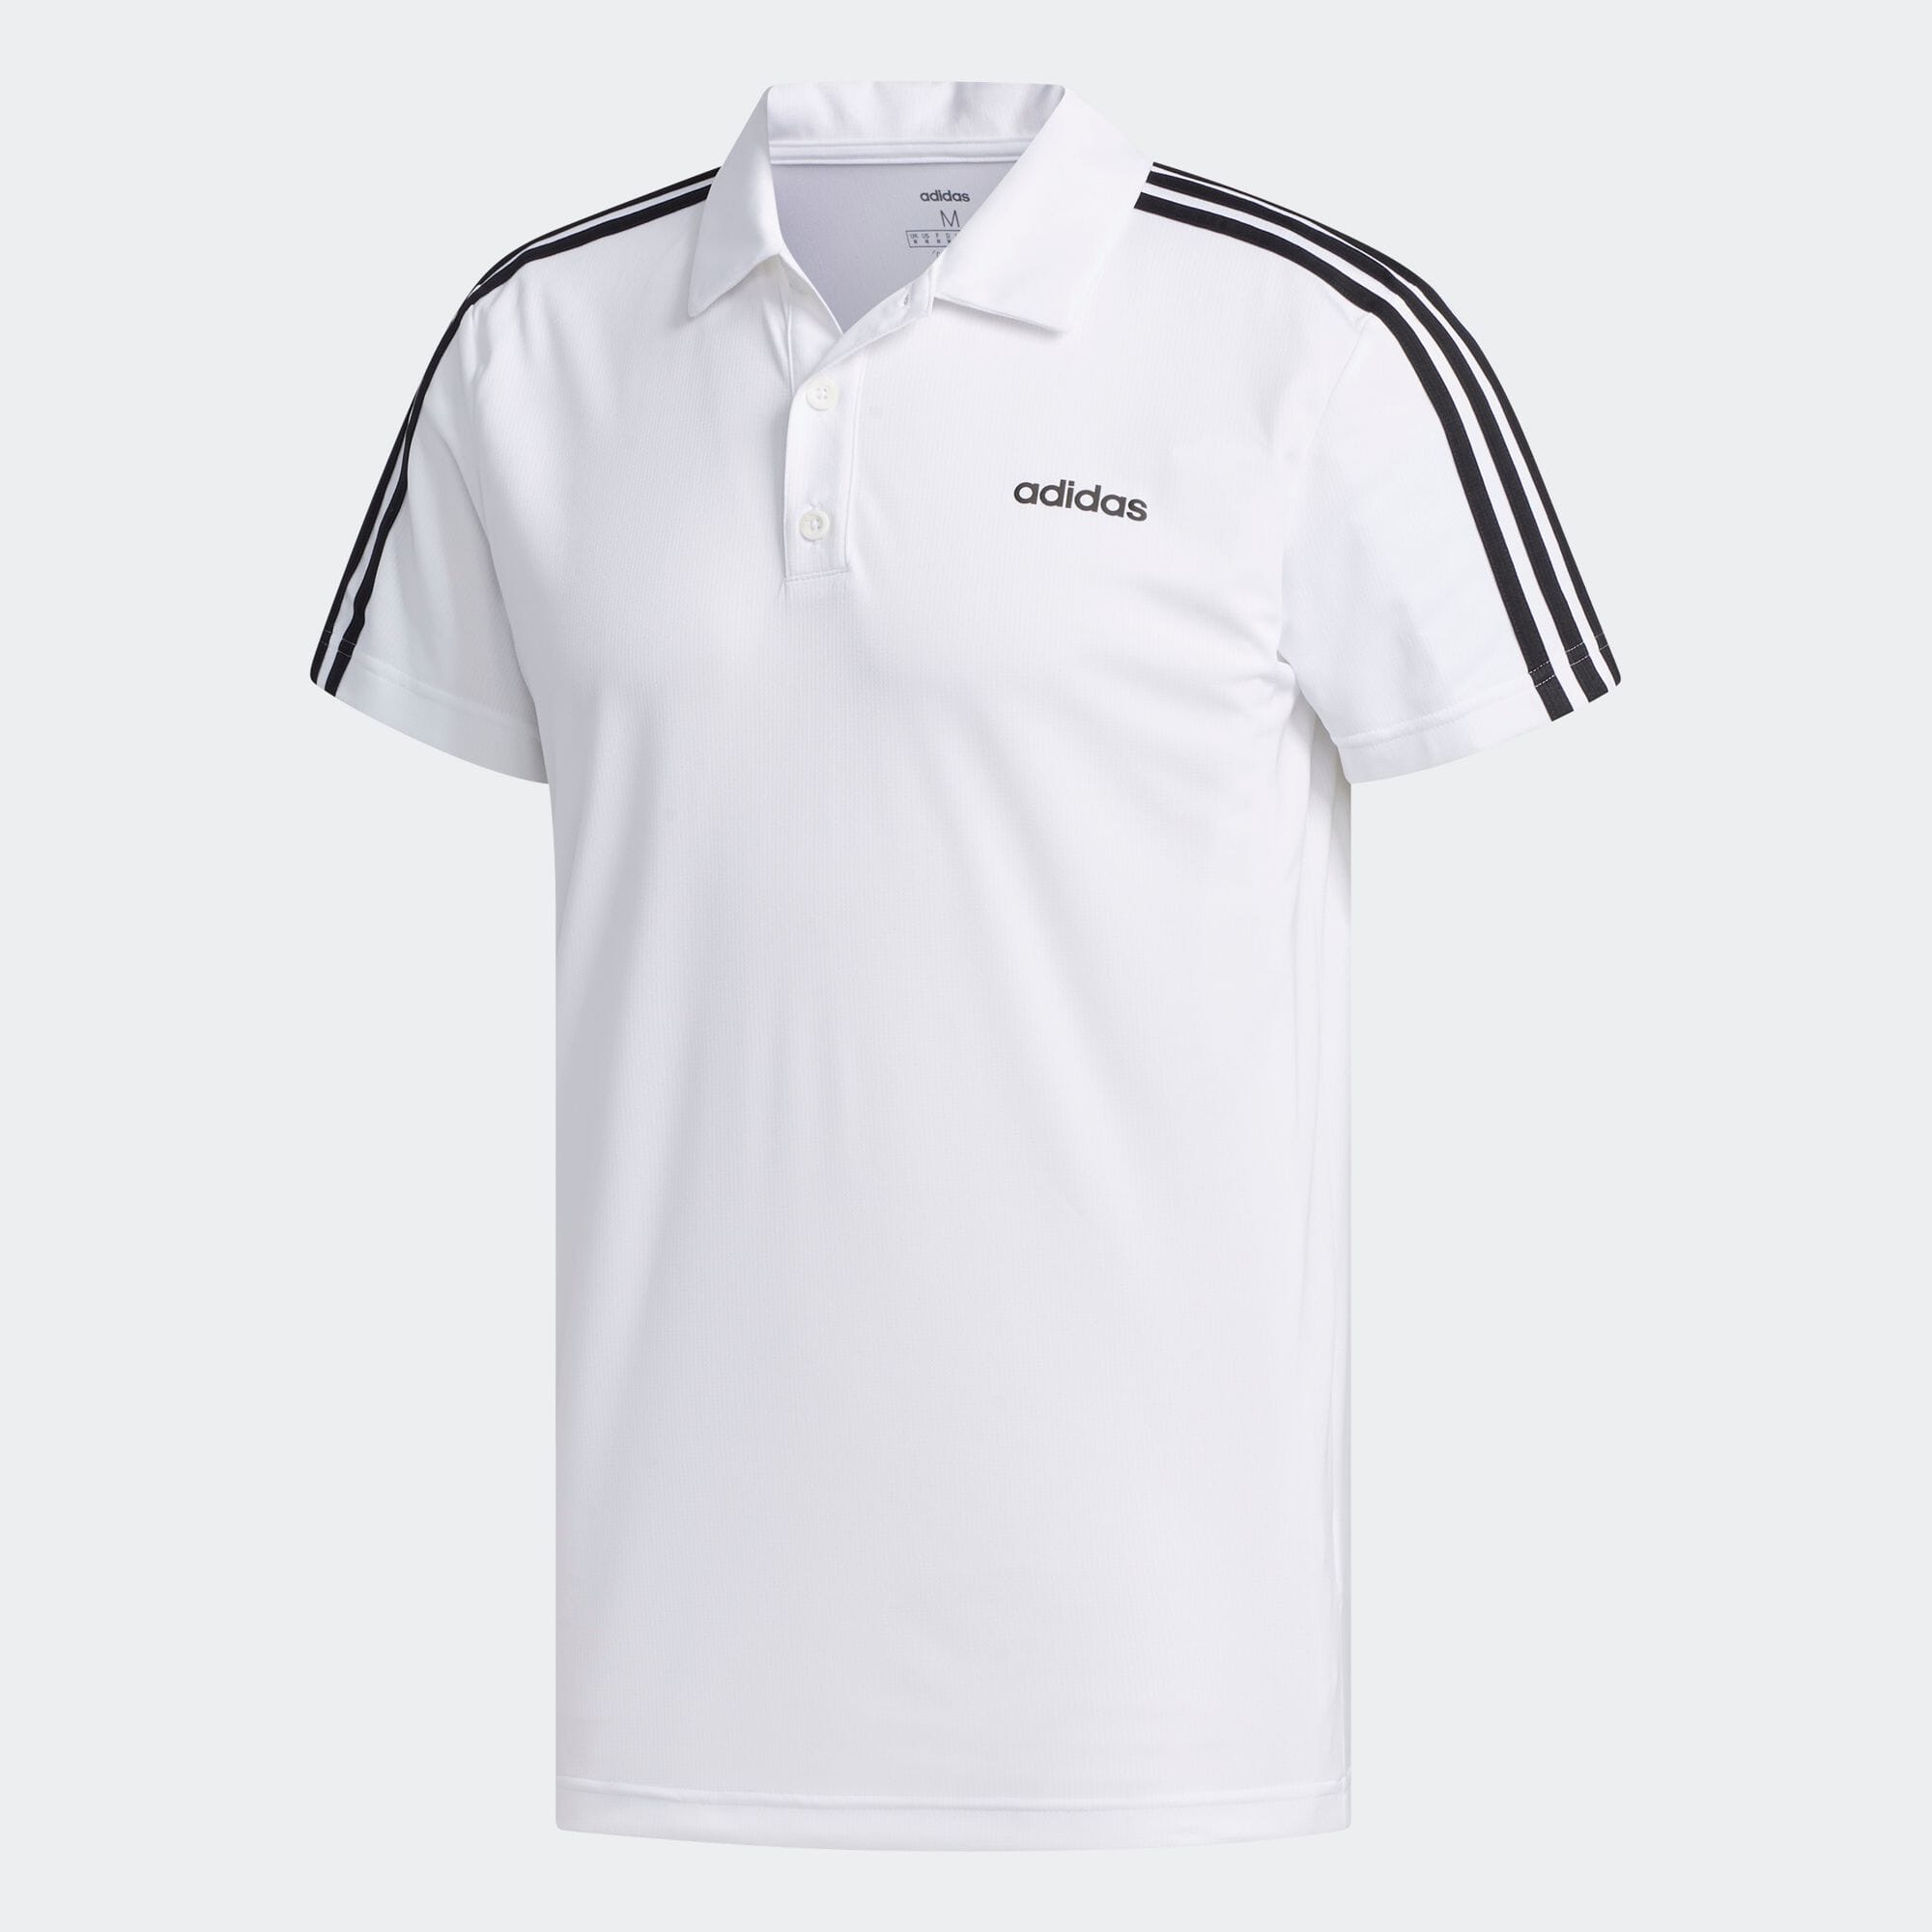 デザインド トゥ ムーブ 3ストライプス ポロシャツ / Designed 2 Move 3-Stripes Polo Shirt メンズ  ジム・トレーニング